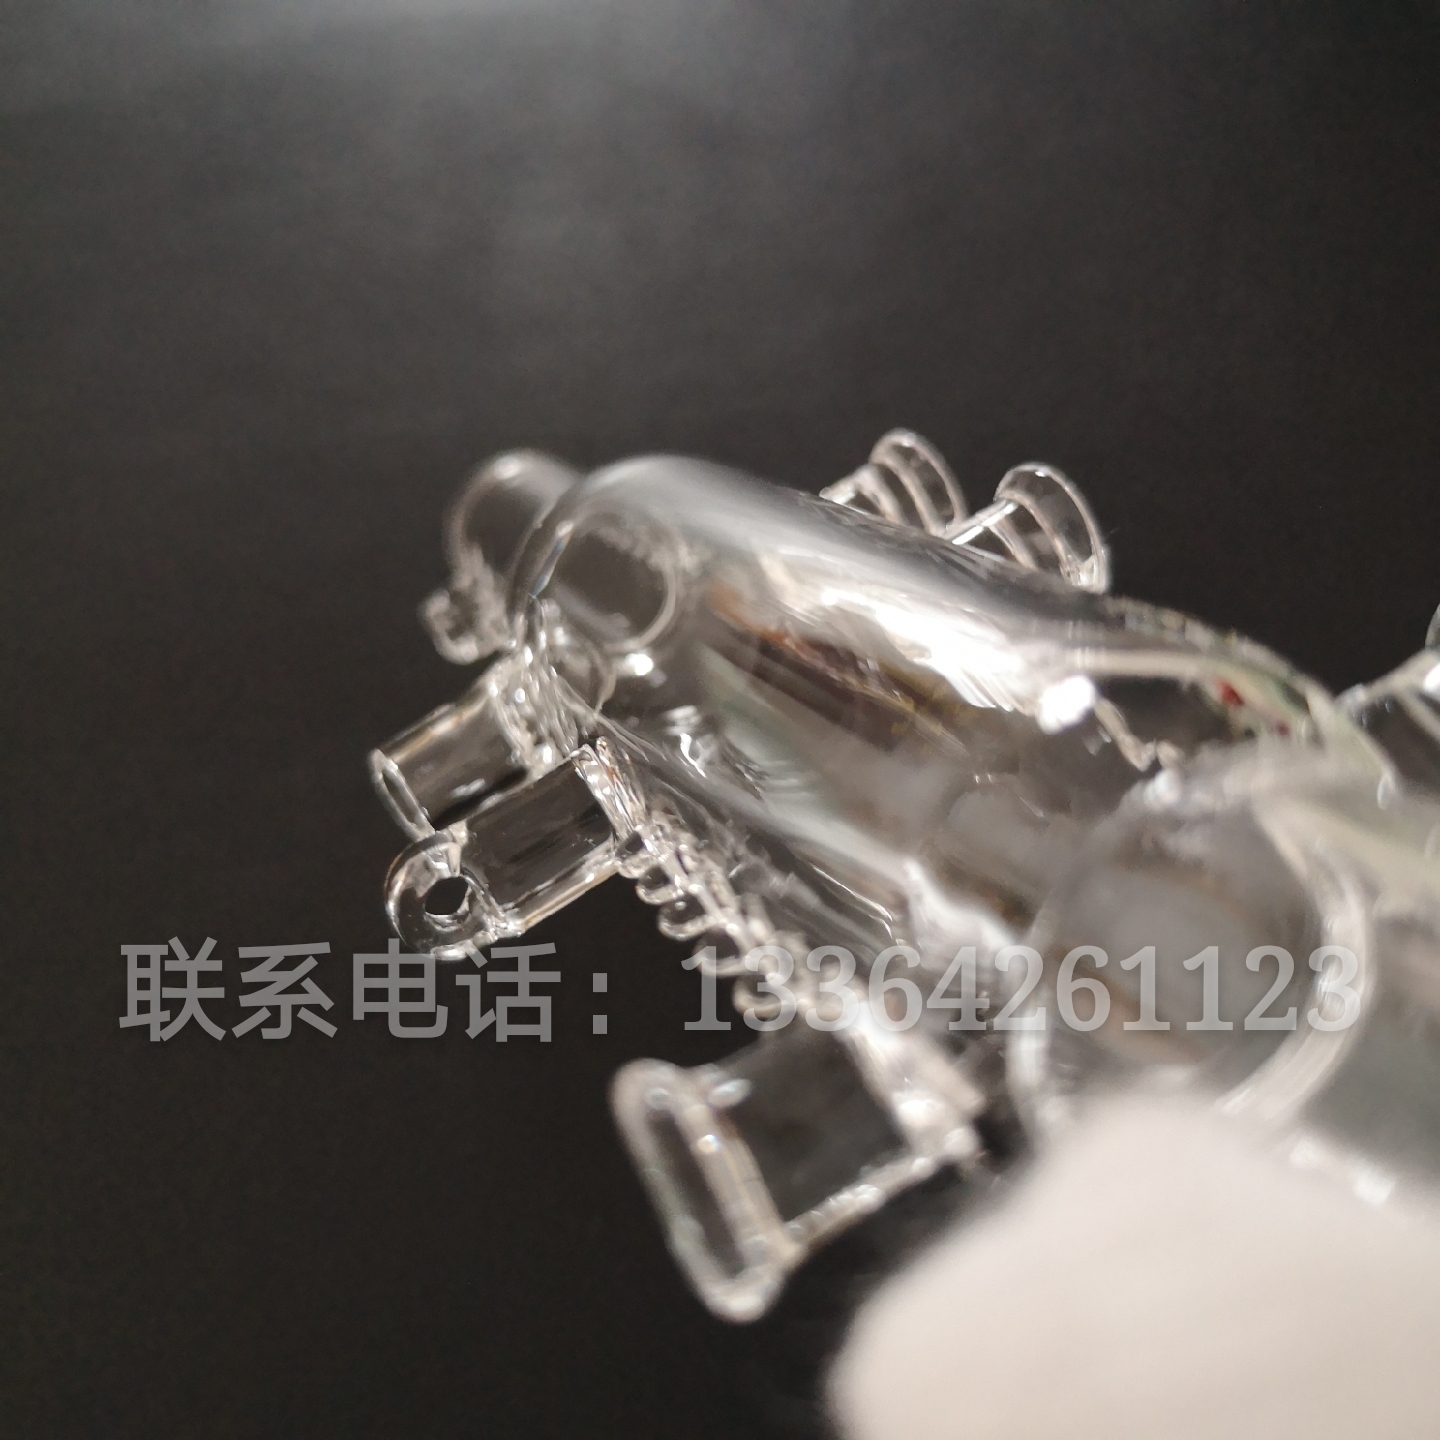 石英异形管锦州石英玻璃厂定制加工石英异形管实验室仪器石英消解仪器